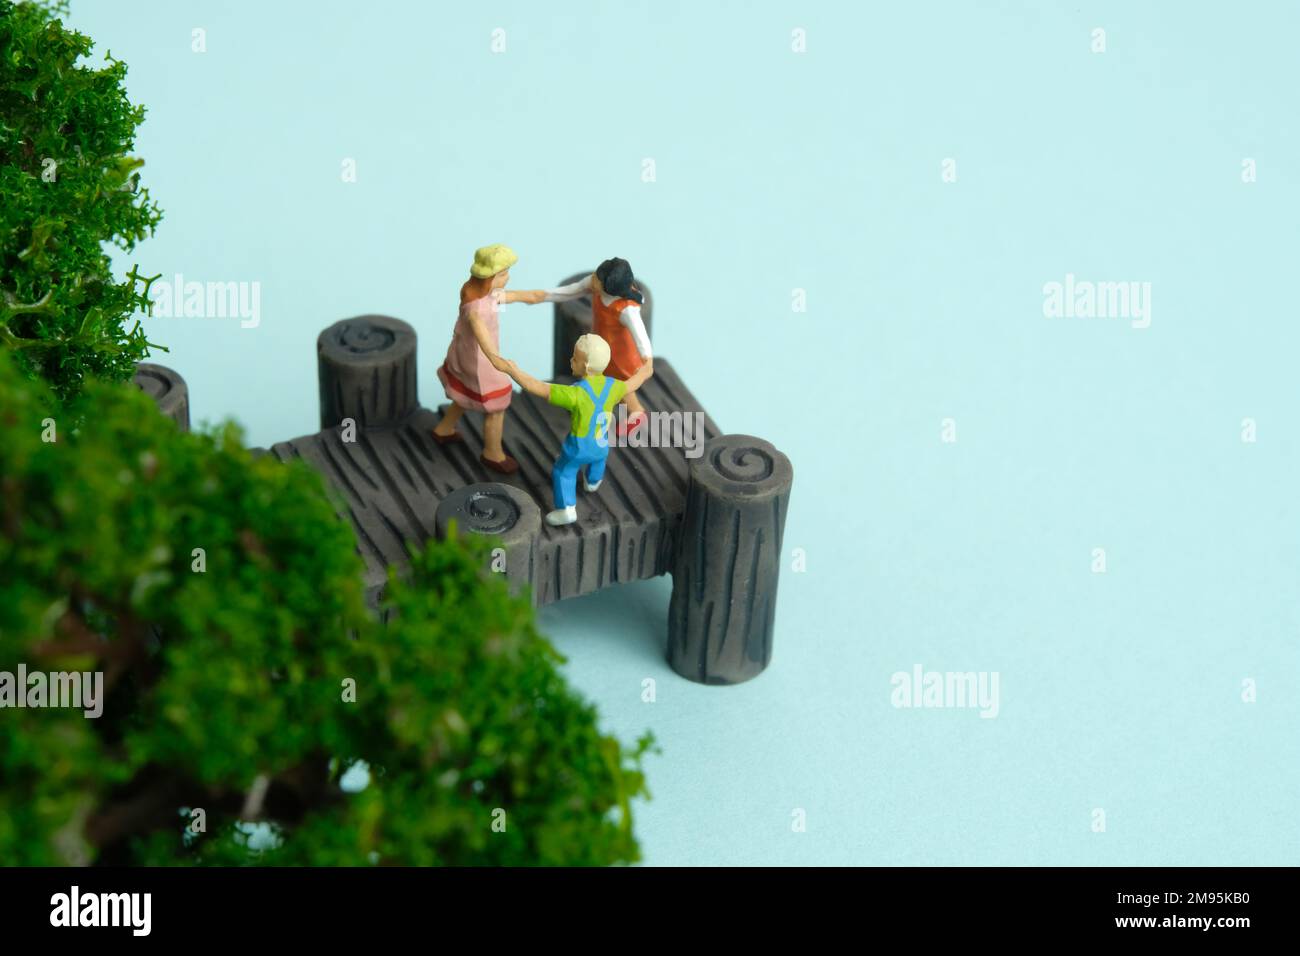 Miniatur-Menschen-Spielzeug-Figuren-Fotografie. Gefährlicher Ort zum Spielen für das Kind. Kinder, die über dem Bridge Lake River spielen. Bildfoto Stockfoto